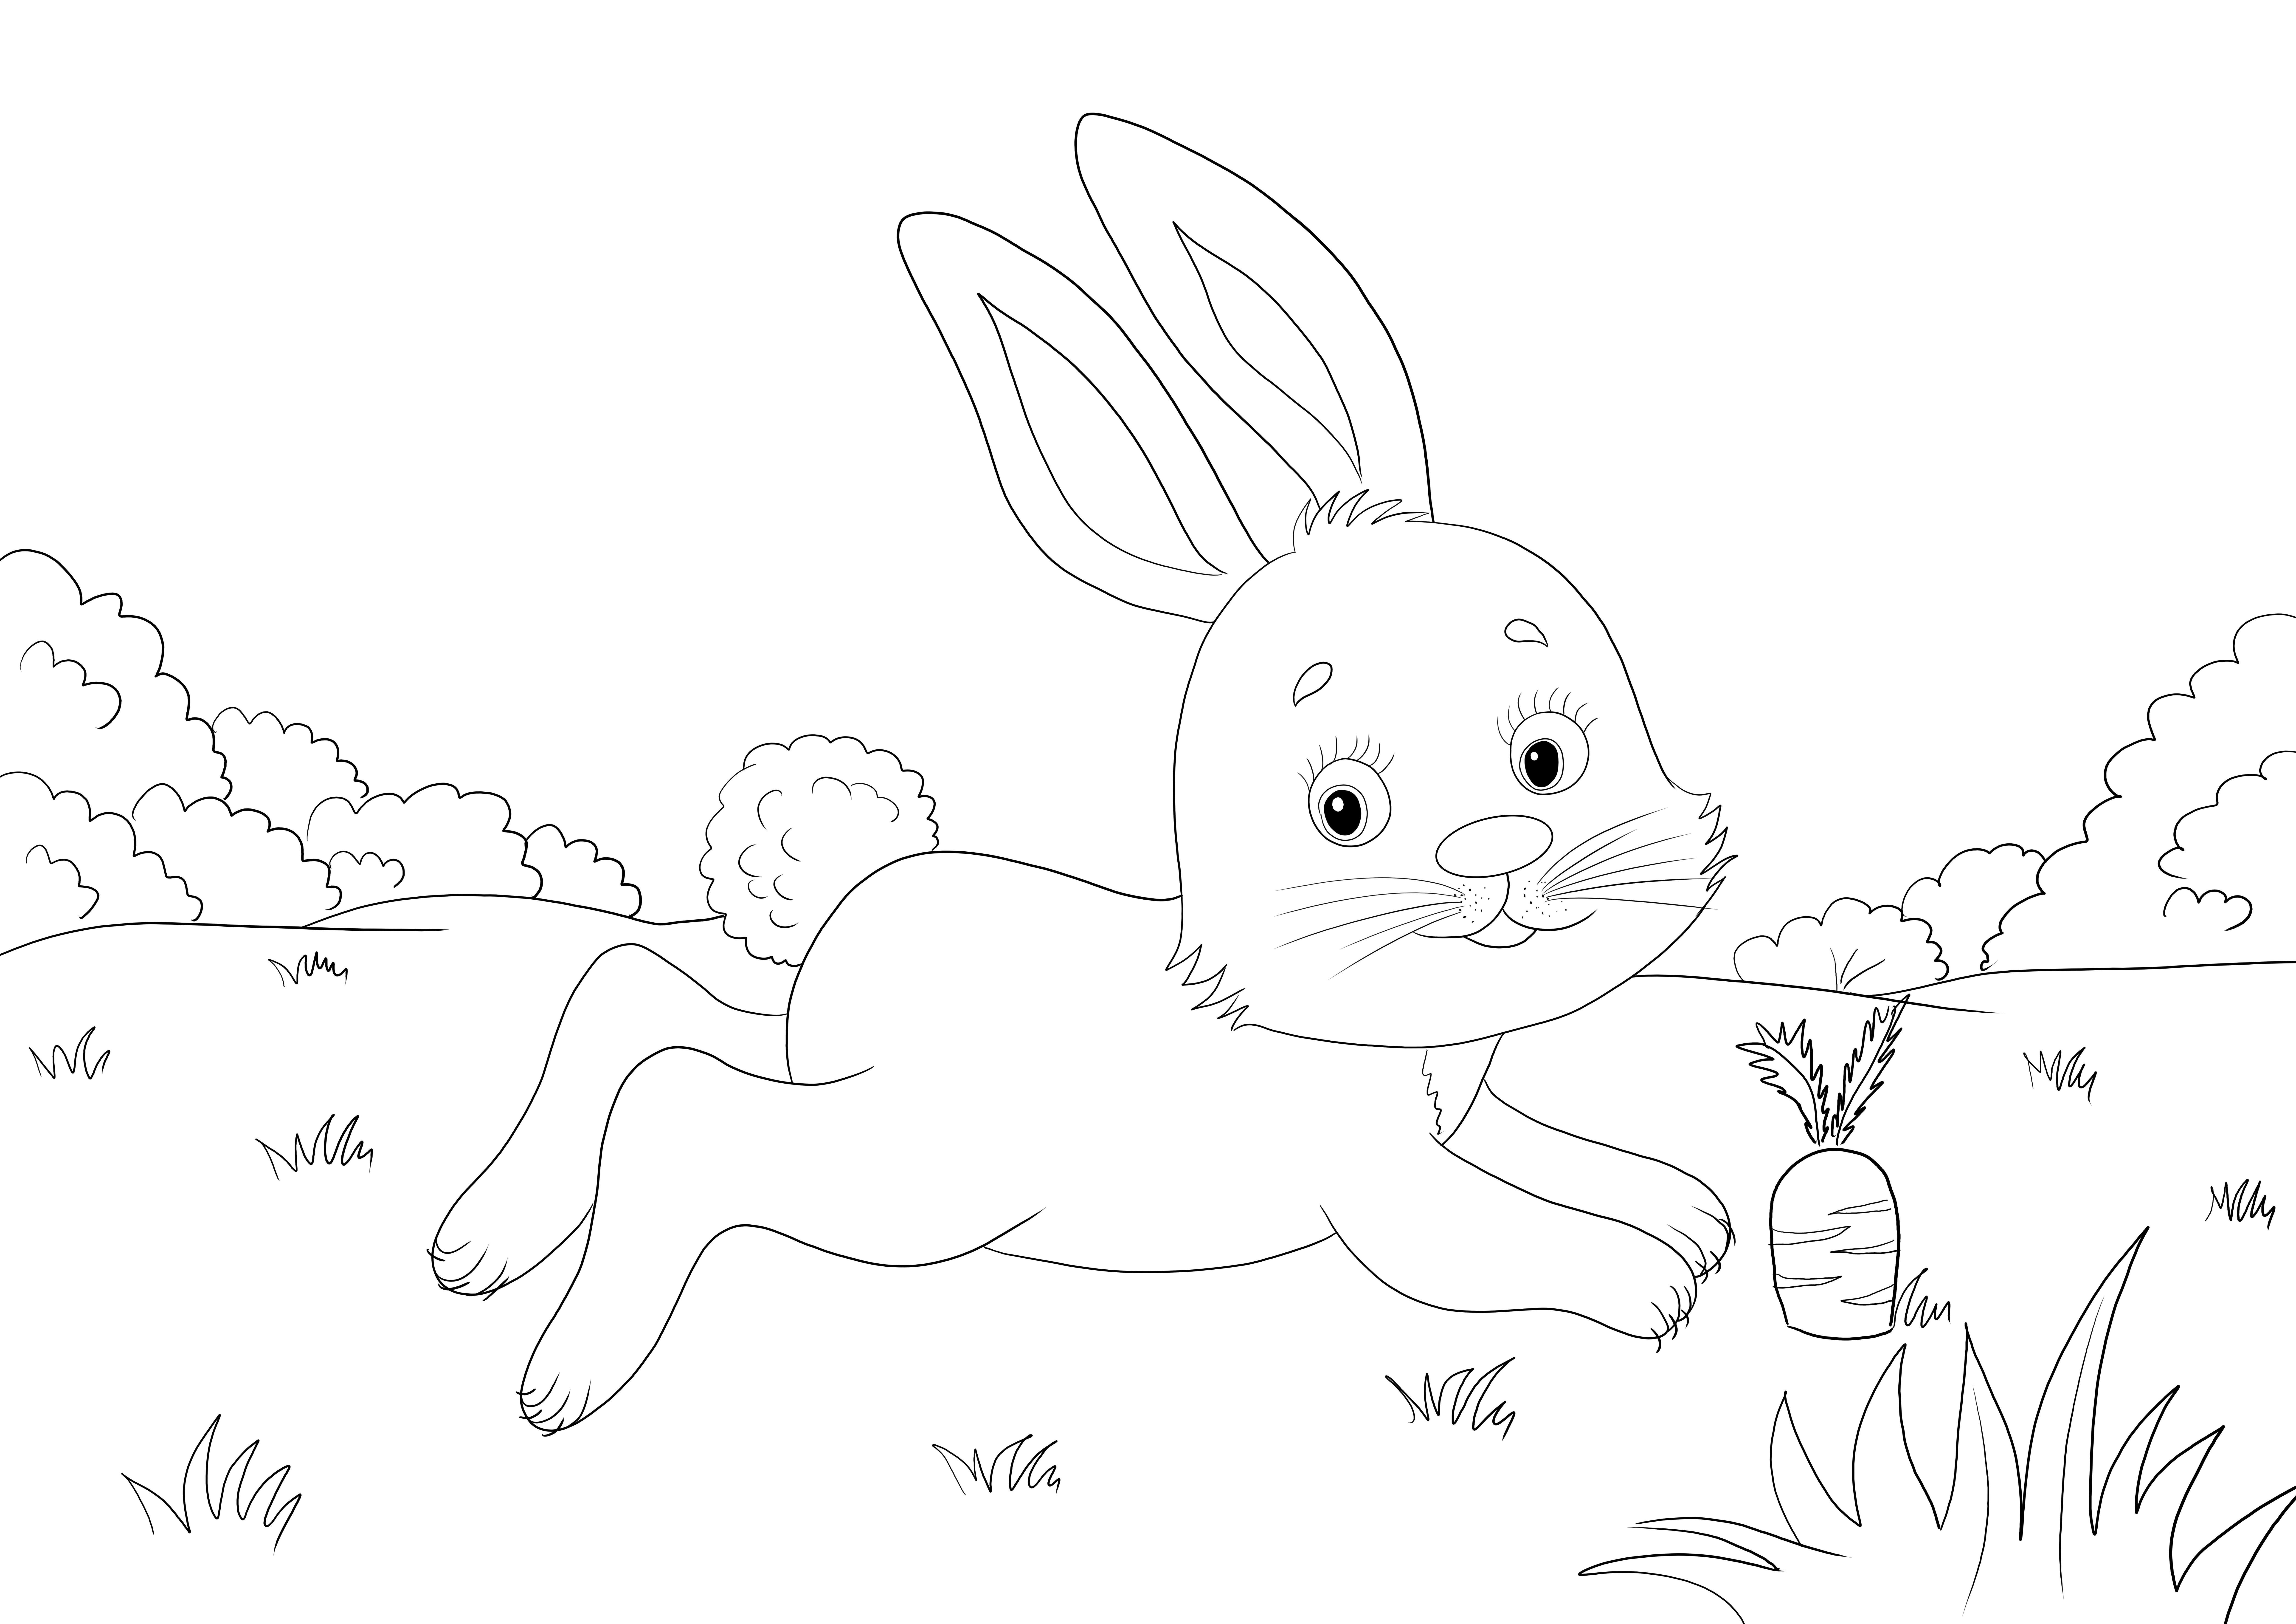 Słodki mały królik biegnący za marchewką do wydrukowania i pokolorowania za darmo